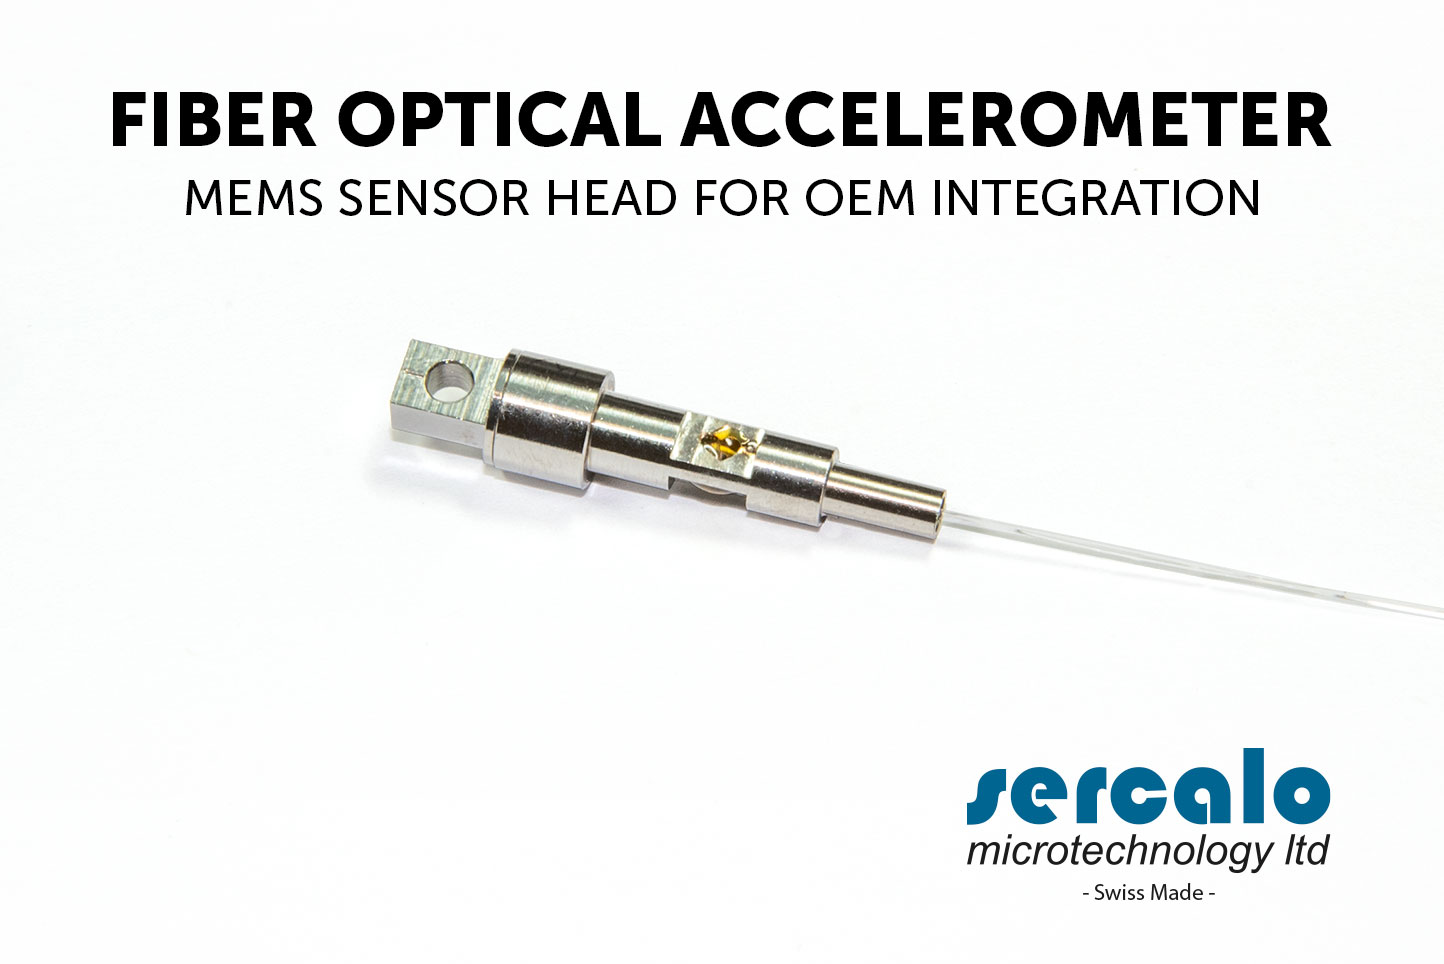 fiber optical accelerometer (FOA)